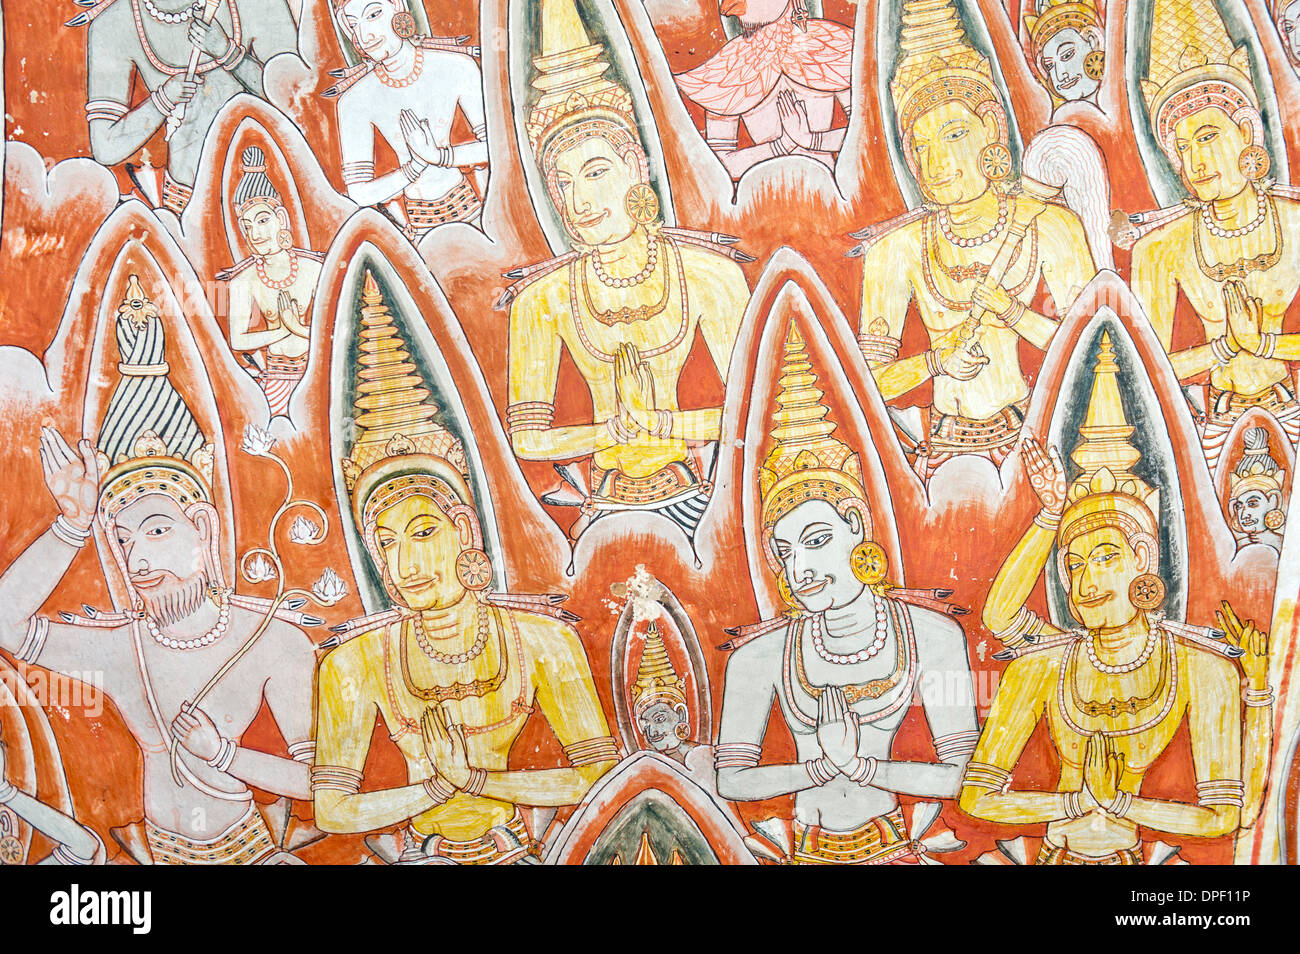 Peinture murale colorée, fresque, priant les dieux avec nimbus, halo, Maharaja-Iena, grotte de Dambulla cave temple bouddhiste Banque D'Images